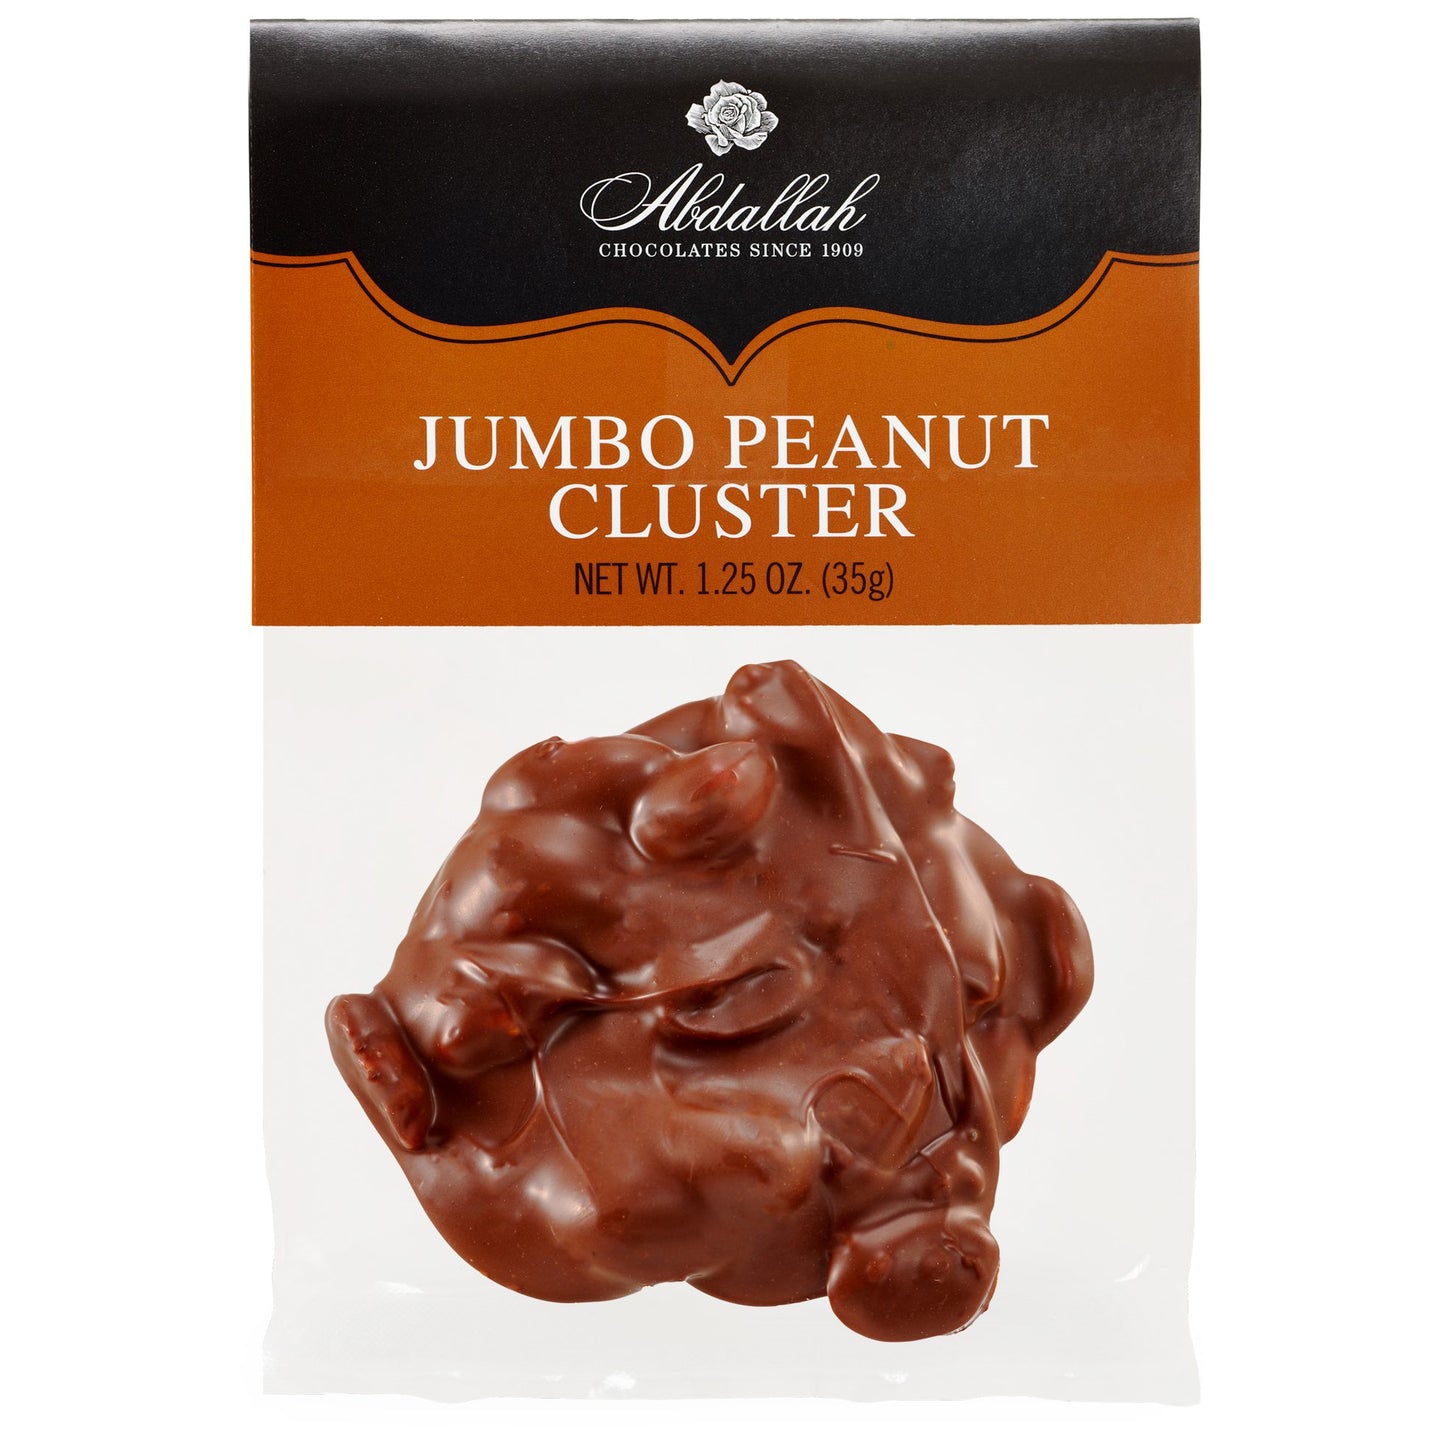 Jumbo Peanut Cluster